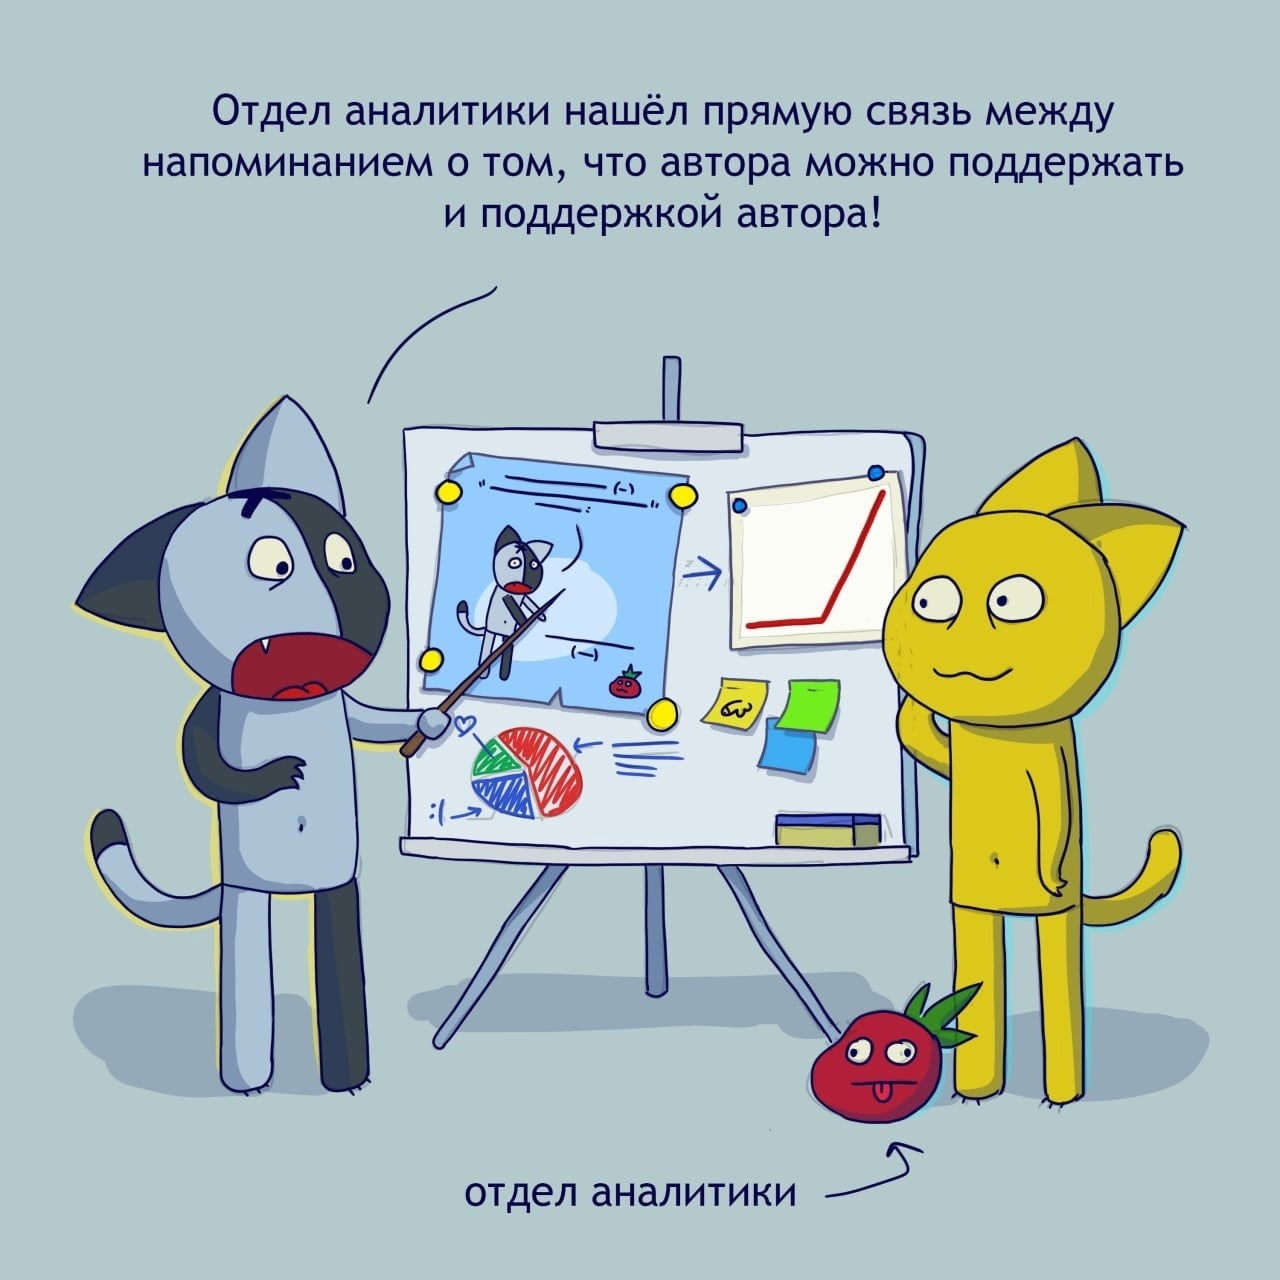 Коты-психопаты, анимешницы и БДСМ имени Сталина: какими были первые веб-комиксы на русском языке? Часть 2 - 23